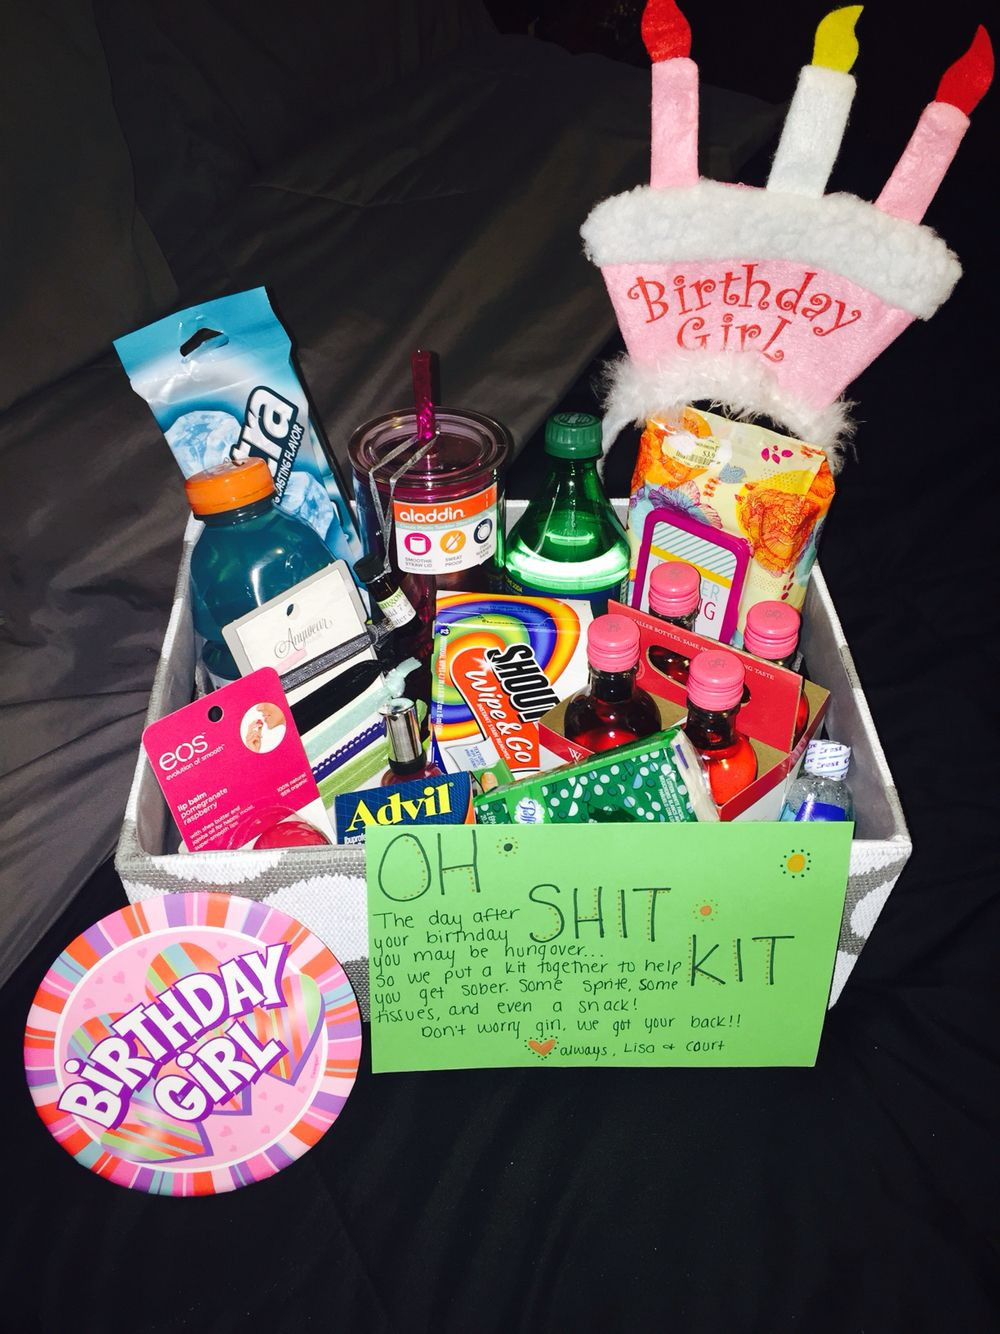 Gift Ideas For Girlfriend 21St Birthday
 Bestfriend s 21st birthday "Oh Shit Kit"